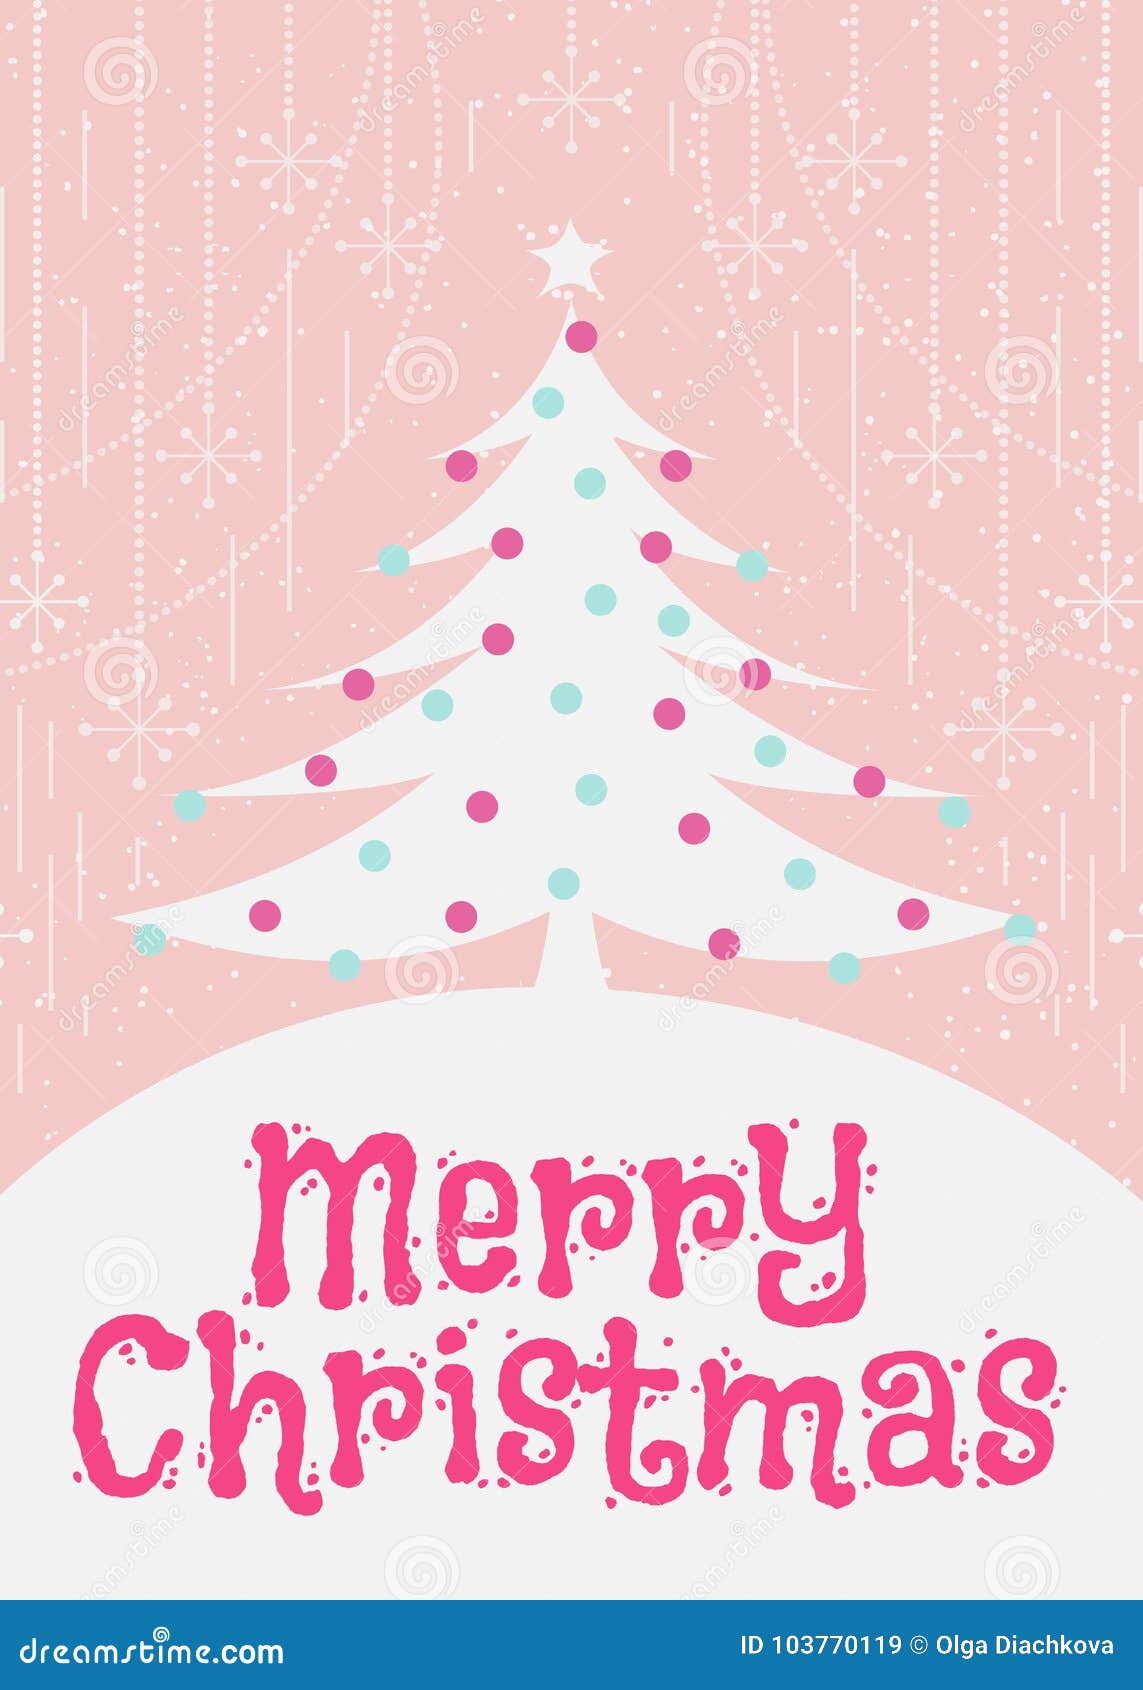 Bạn đang tìm cách để gửi lời chúc mừng Giáng Sinh đến những người thân yêu? Không cần phải tìm xa, hãy nhấp chuột để xem thiết kế thiệp chúc mừng Giáng Sinh tuyệt đẹp này. Thiết kế độc đáo với hình ảnh chú tuần lộc dễ thương và chuỗi đèn Noel tạo nên một bức tranh Giáng Sinh đúng nghĩa.